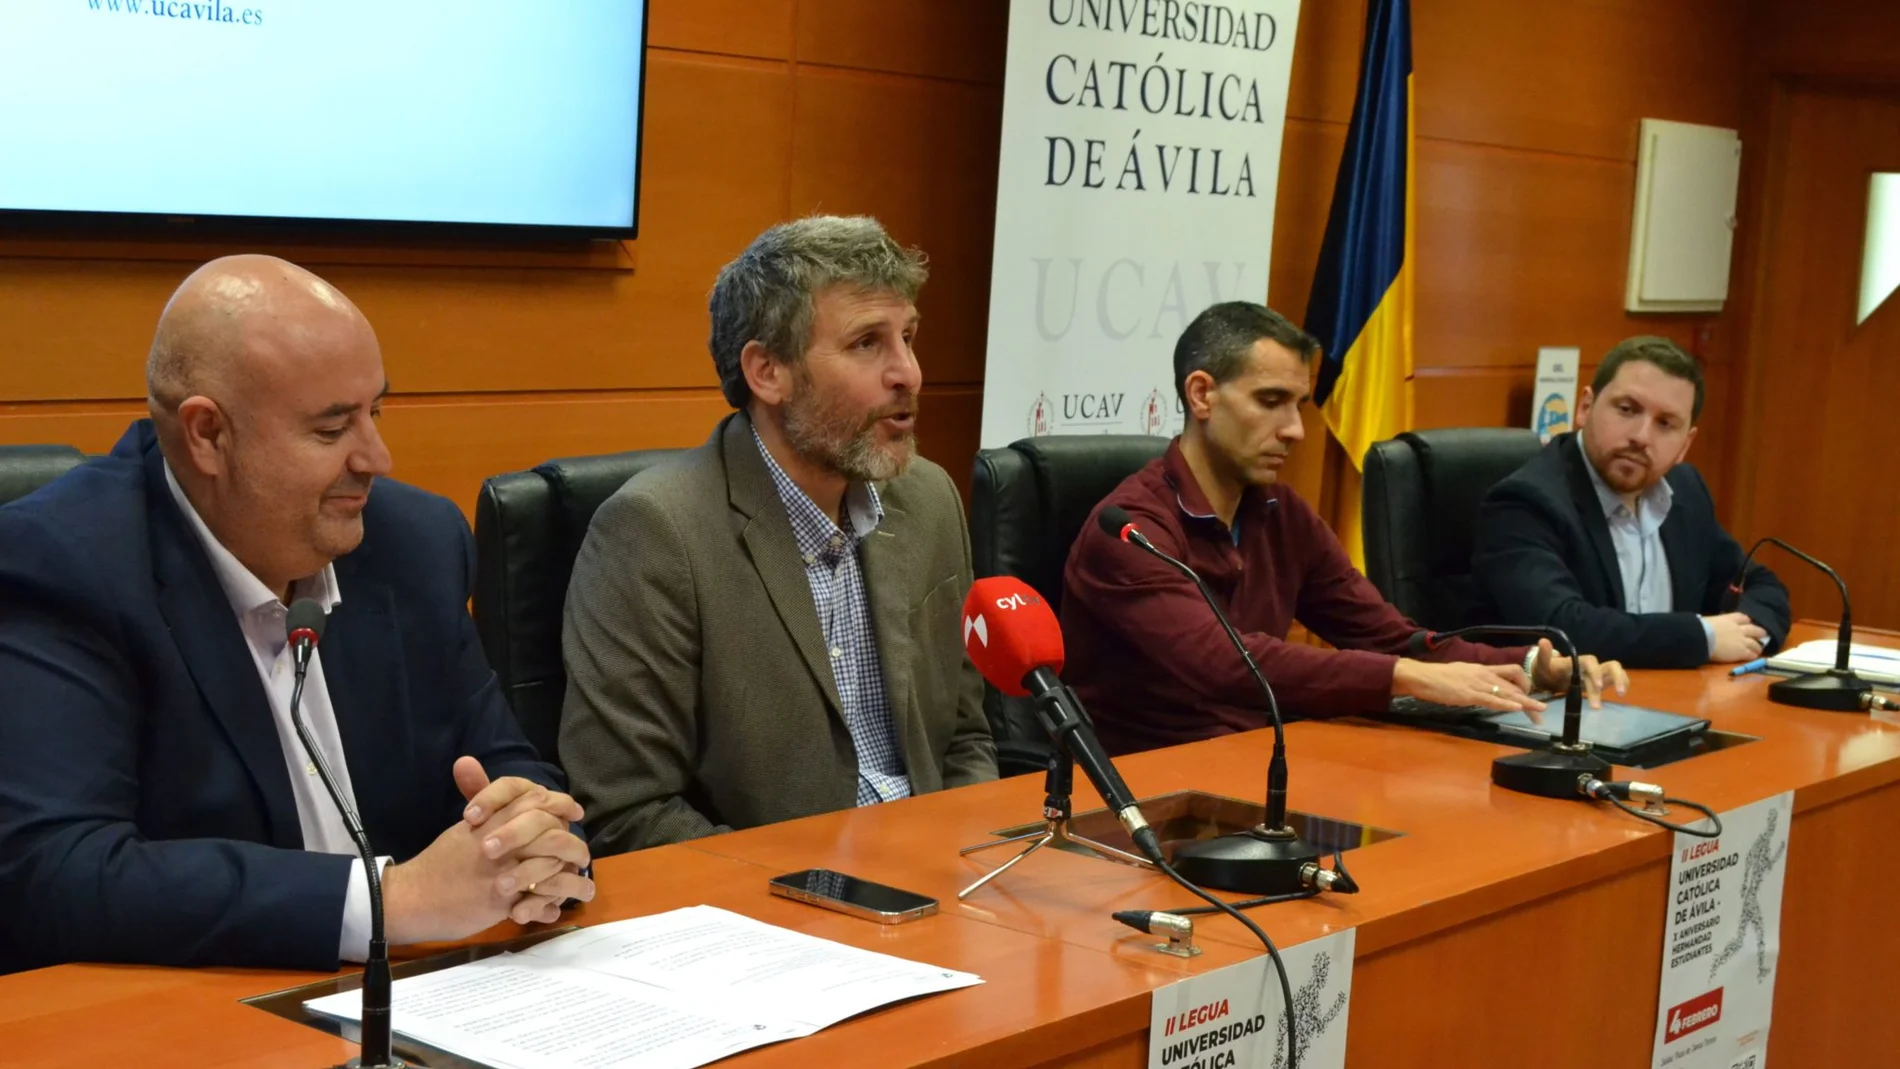 Presentación de la “II Legua Universidad Católica de Ávila” 